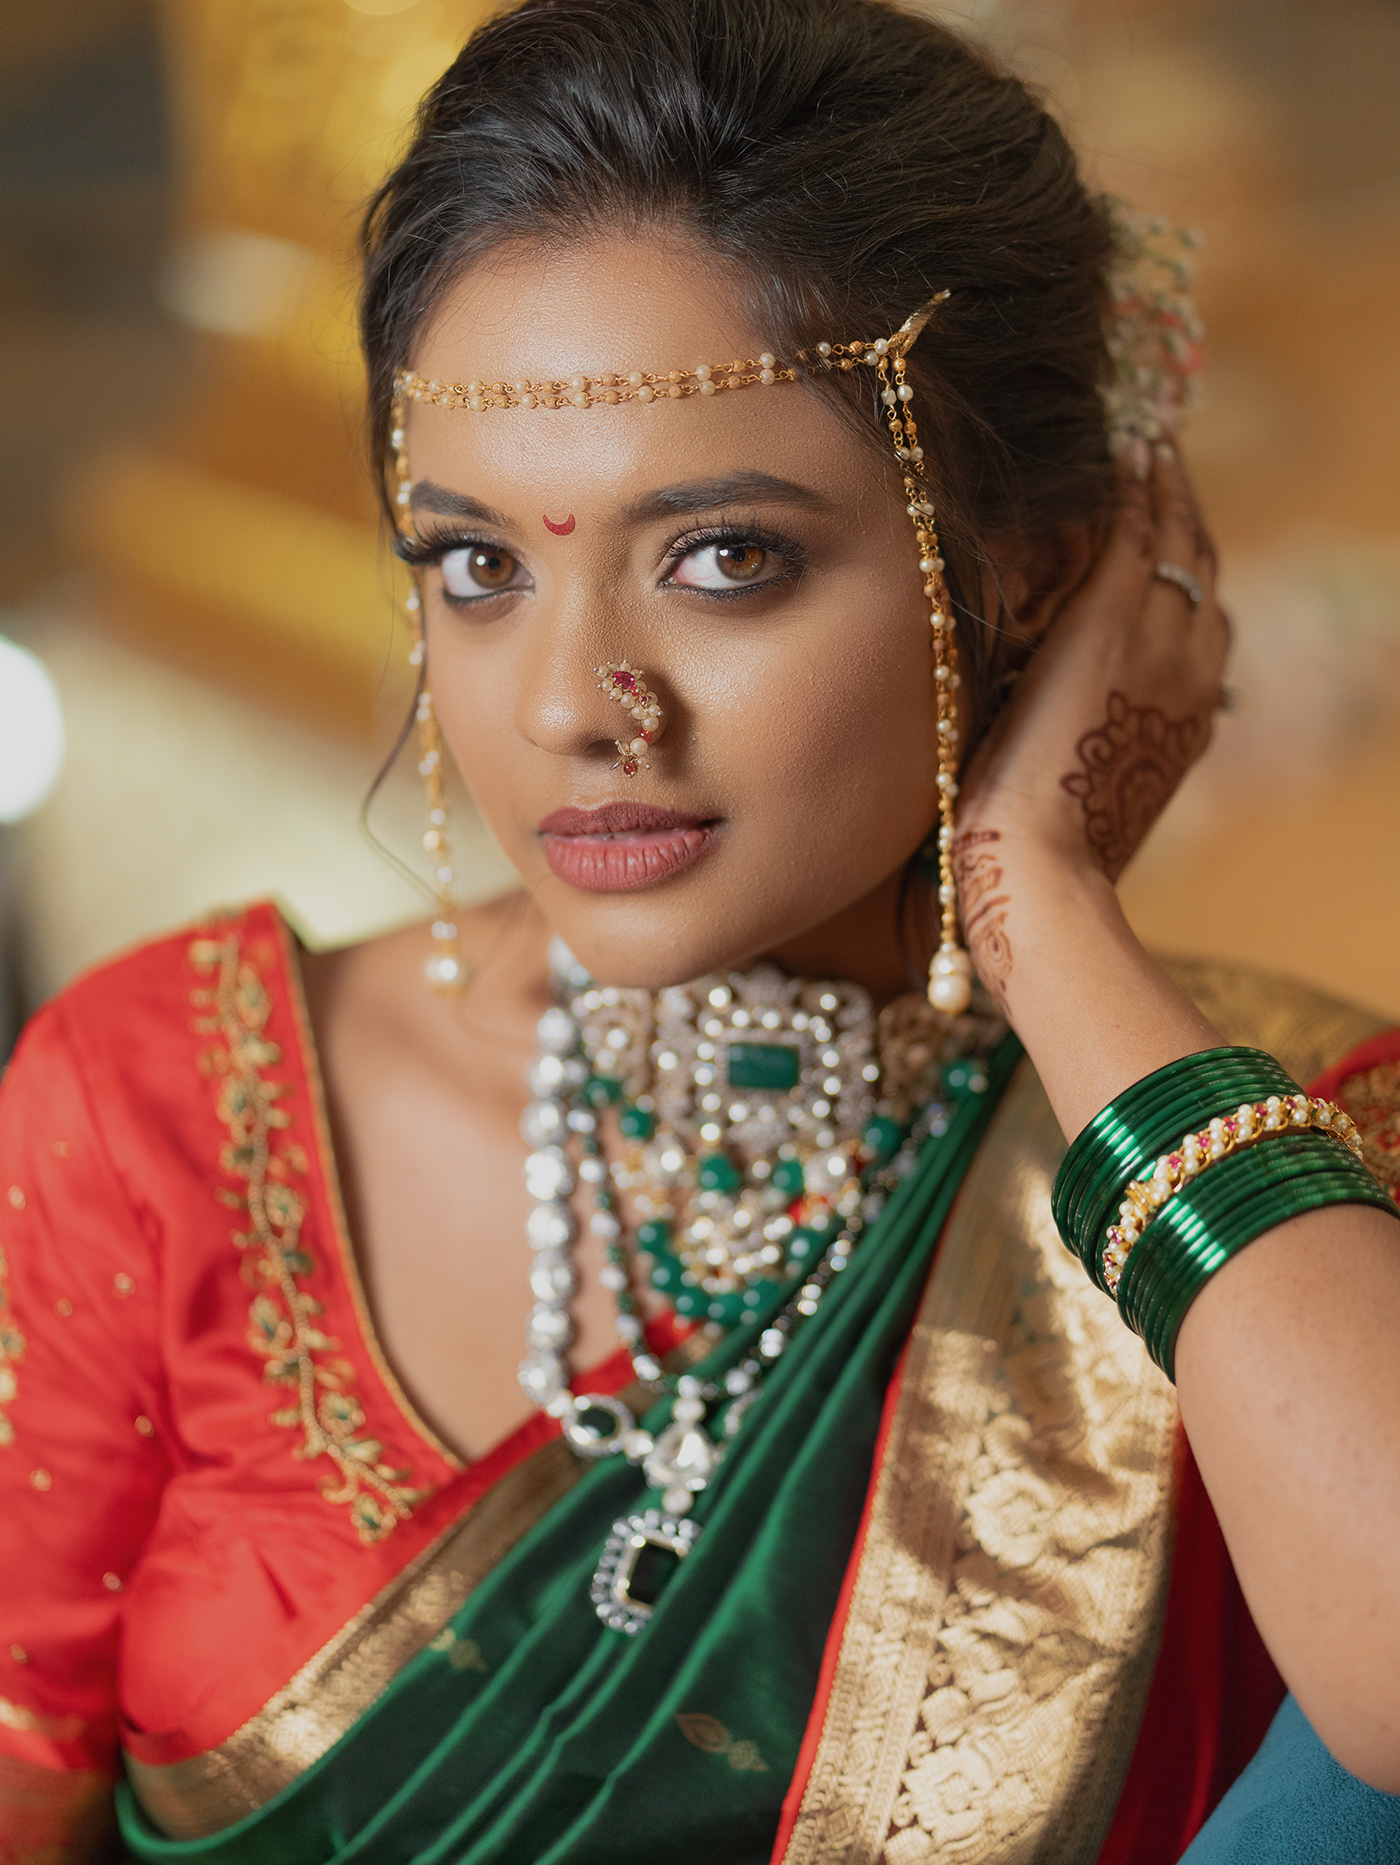 magazine layout bride khushi wedding indianwedding bridalasia BRIDALMAGAZINE weddinginspo WEDDINGMAGAZINE WeddingVows